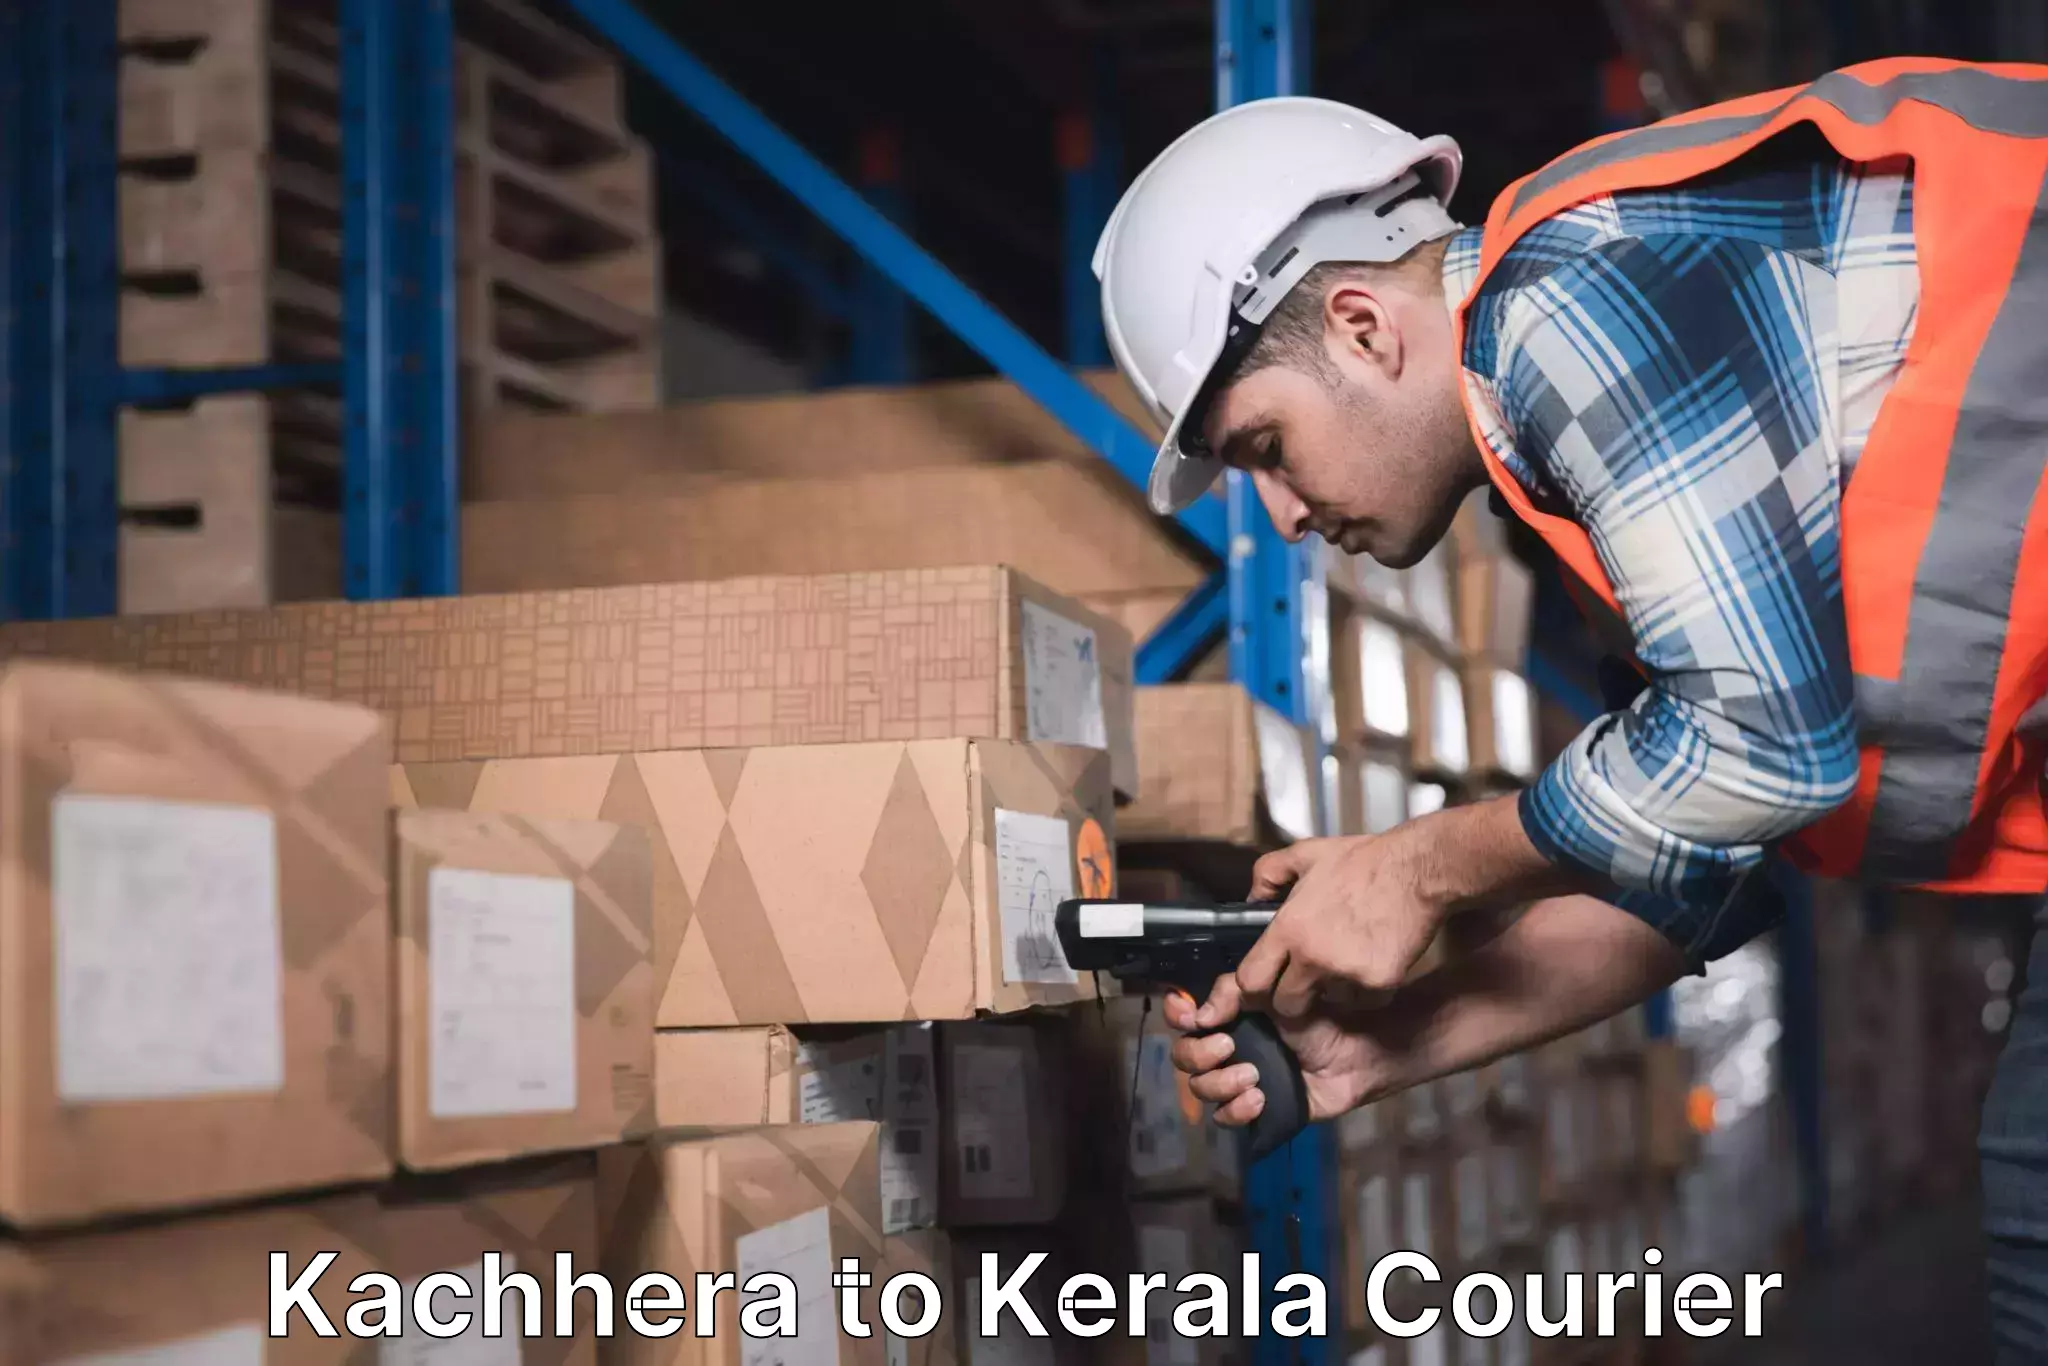 Express shipping Kachhera to Kerala